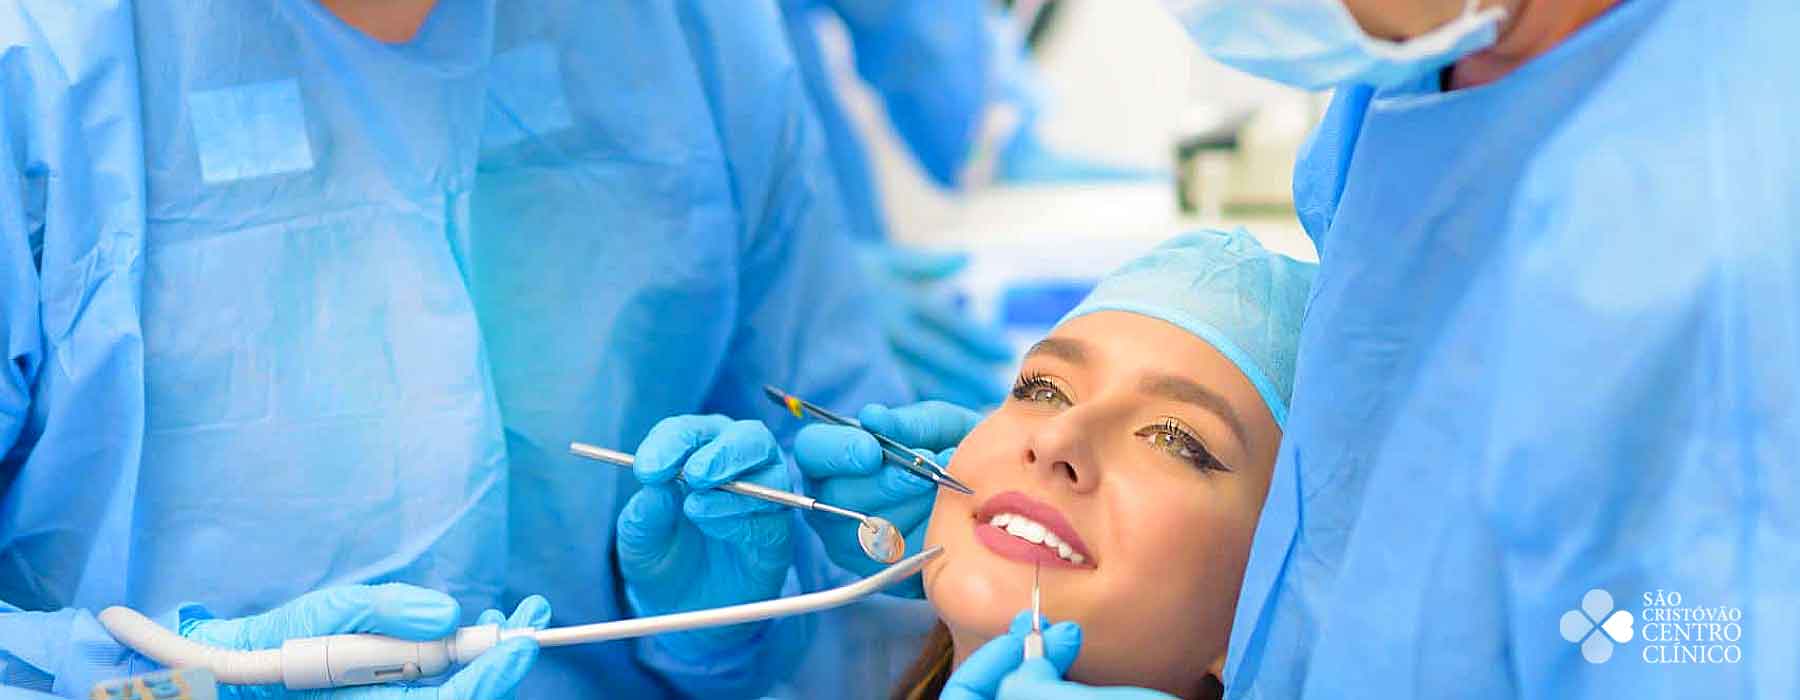 Os implantes dentários permitem ao dentista aplicar dentes de substituição directamente num suporte metálico cirurgicamente implantado no seu maxilar